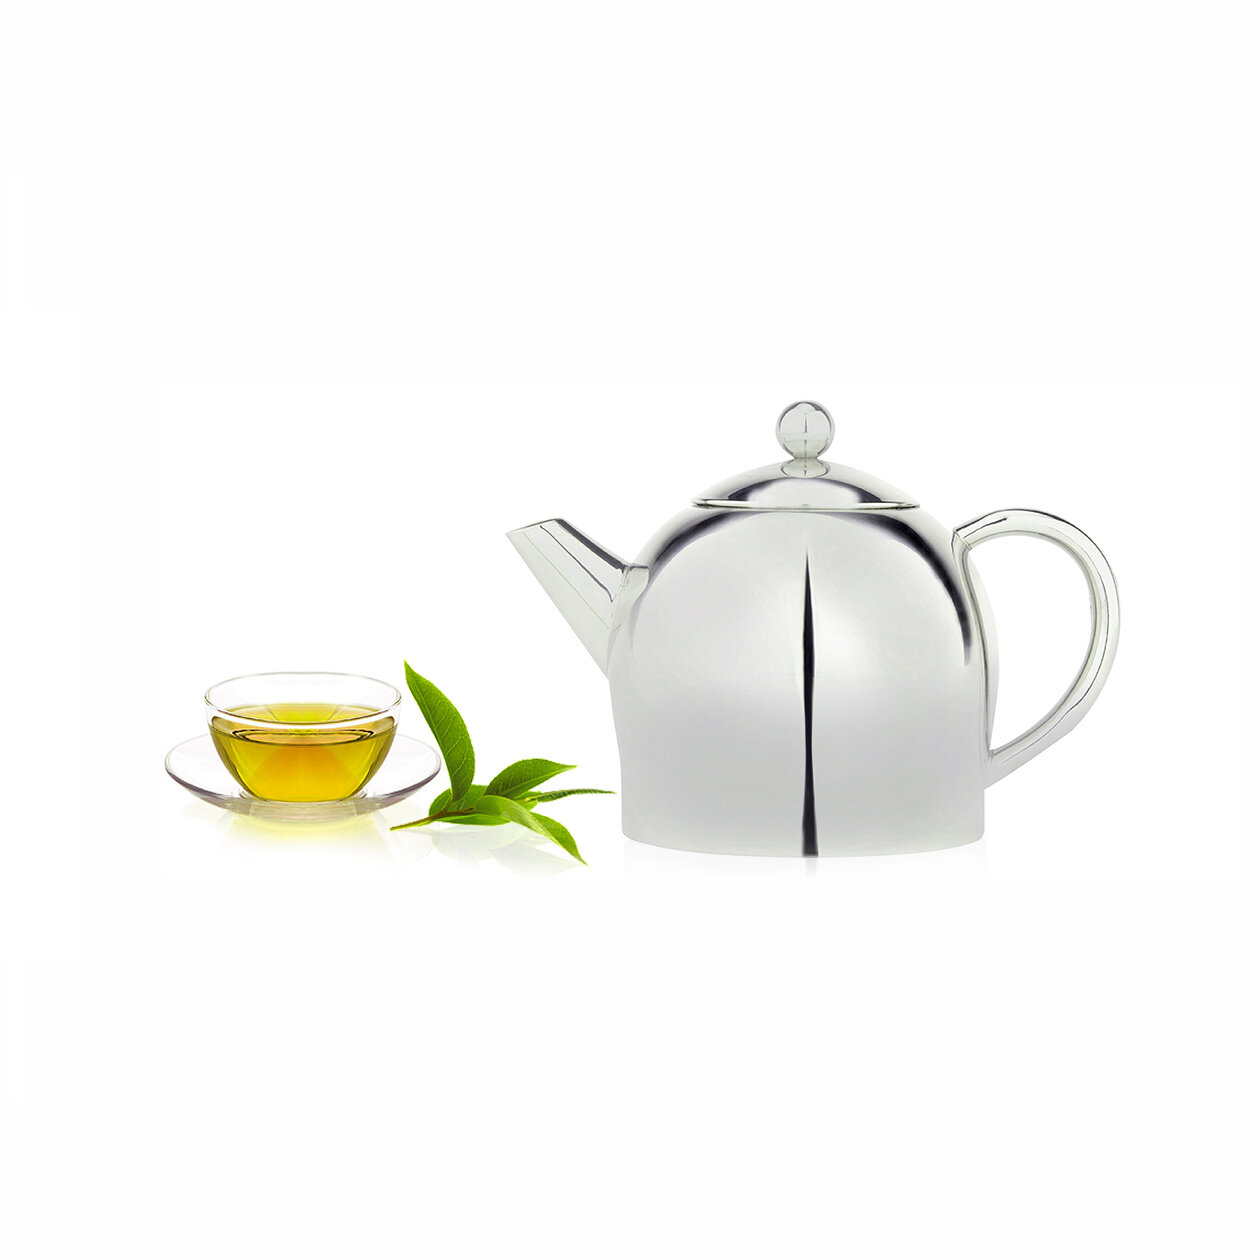 https://assets.wfcdn.com/im/17788204/compr-r85/3577/35770943/cuisinox-3392oz-stainless-steel-teapot.jpg